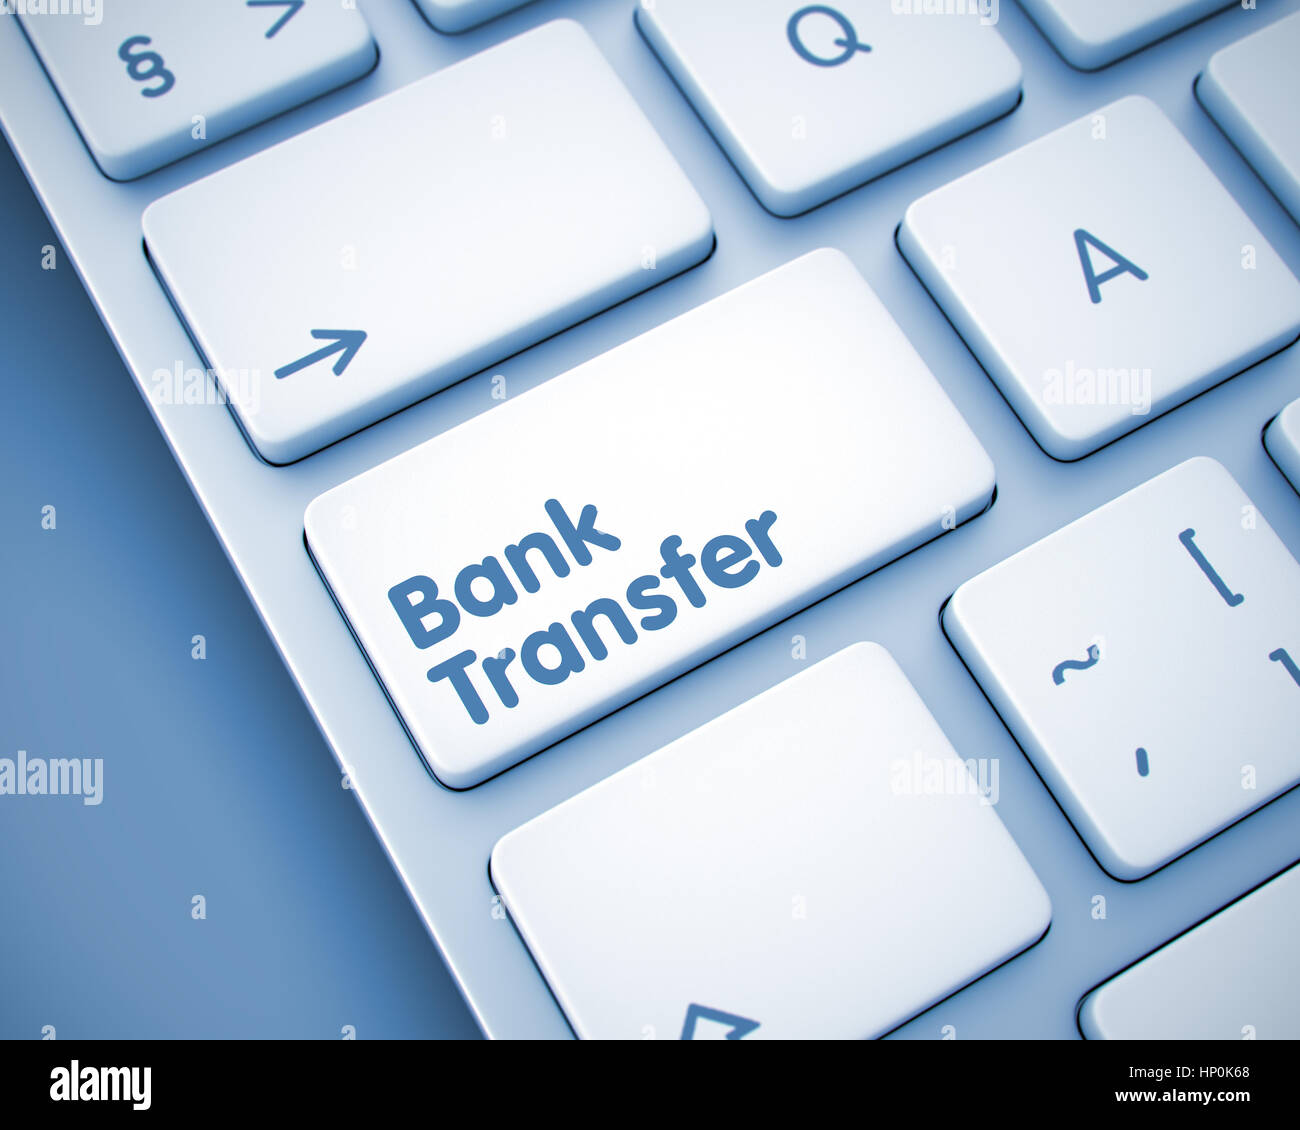 Bonifico bancario - Il messaggio sul tasto della tastiera. 3D. Foto Stock